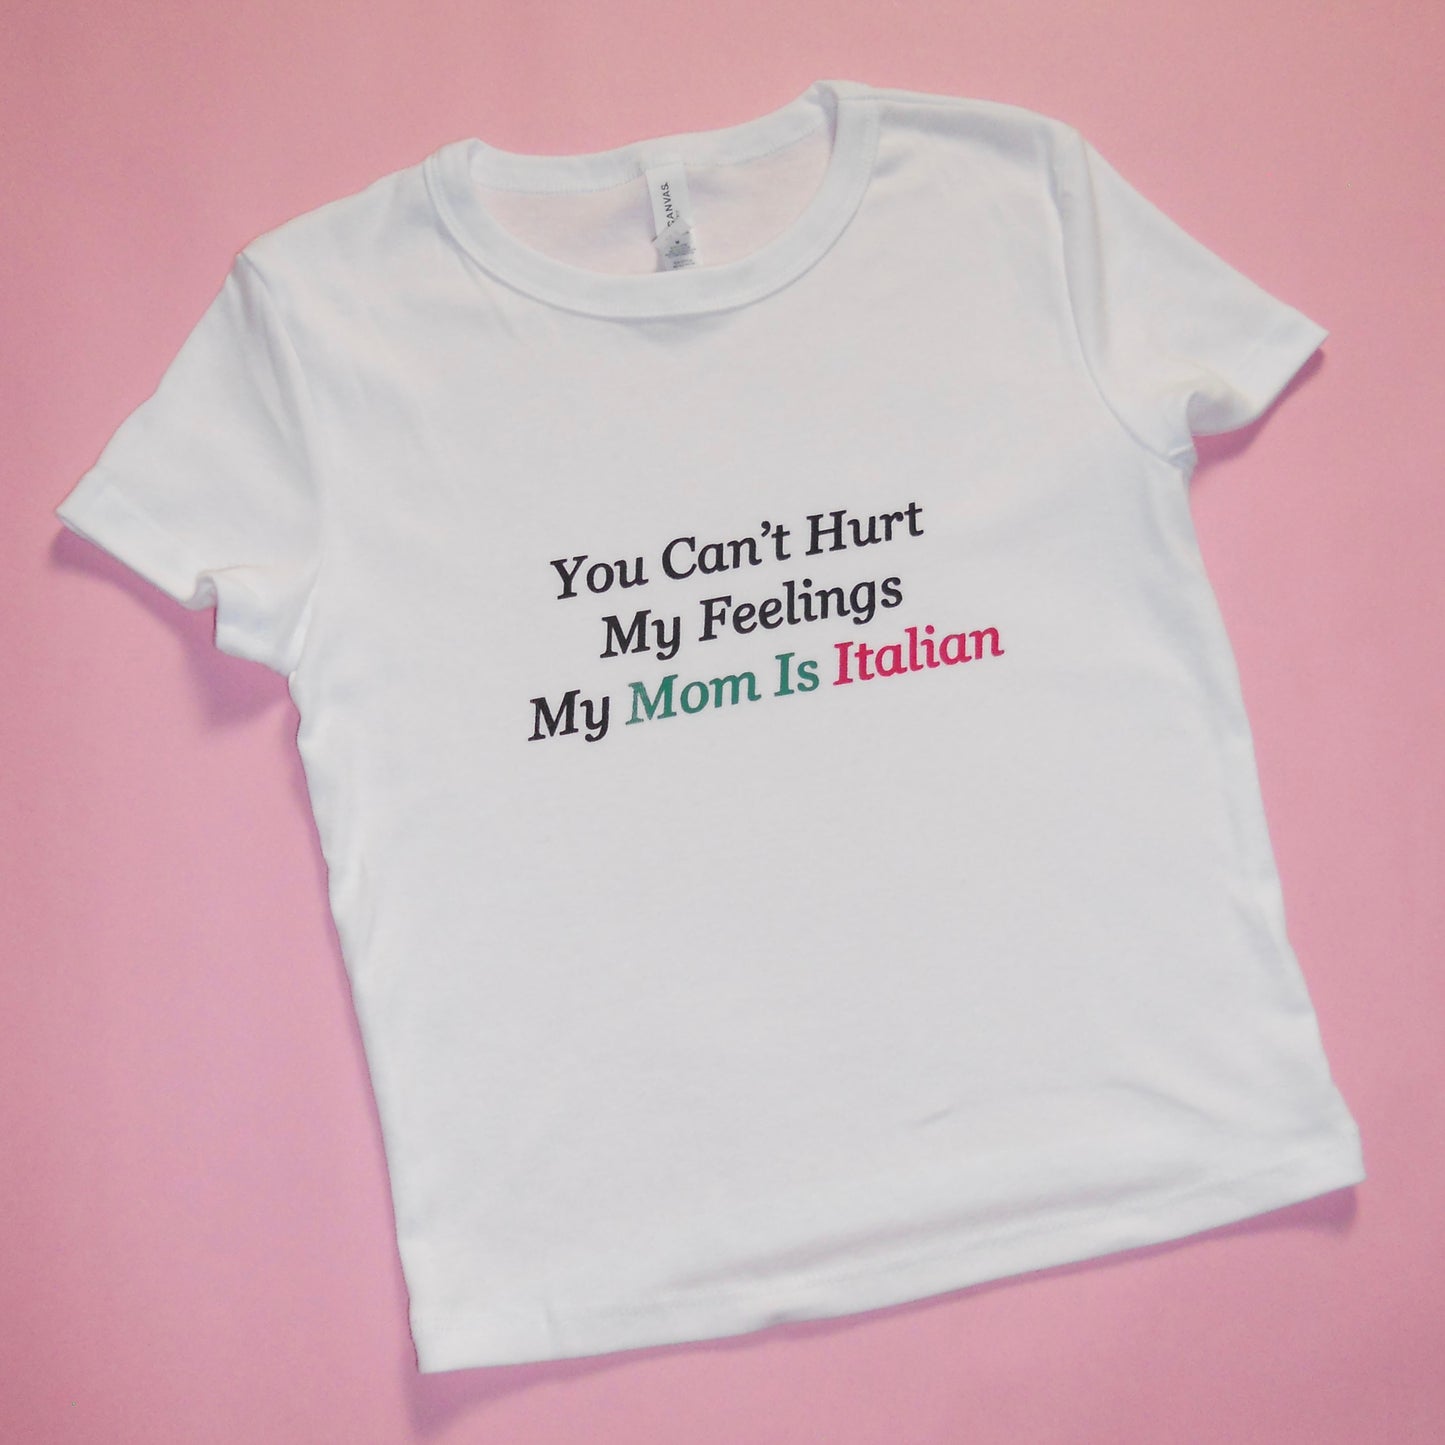 MY MOM IS ITALIAN baby tee